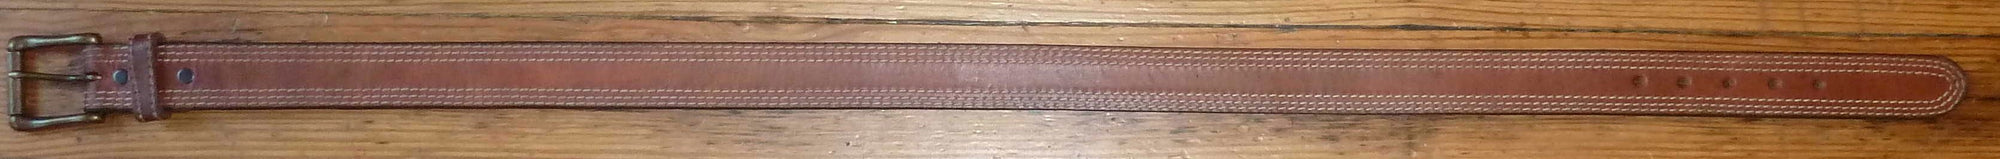 Rockmount Ranch Wear Accessory Triple Stitch Leather Belt Tan